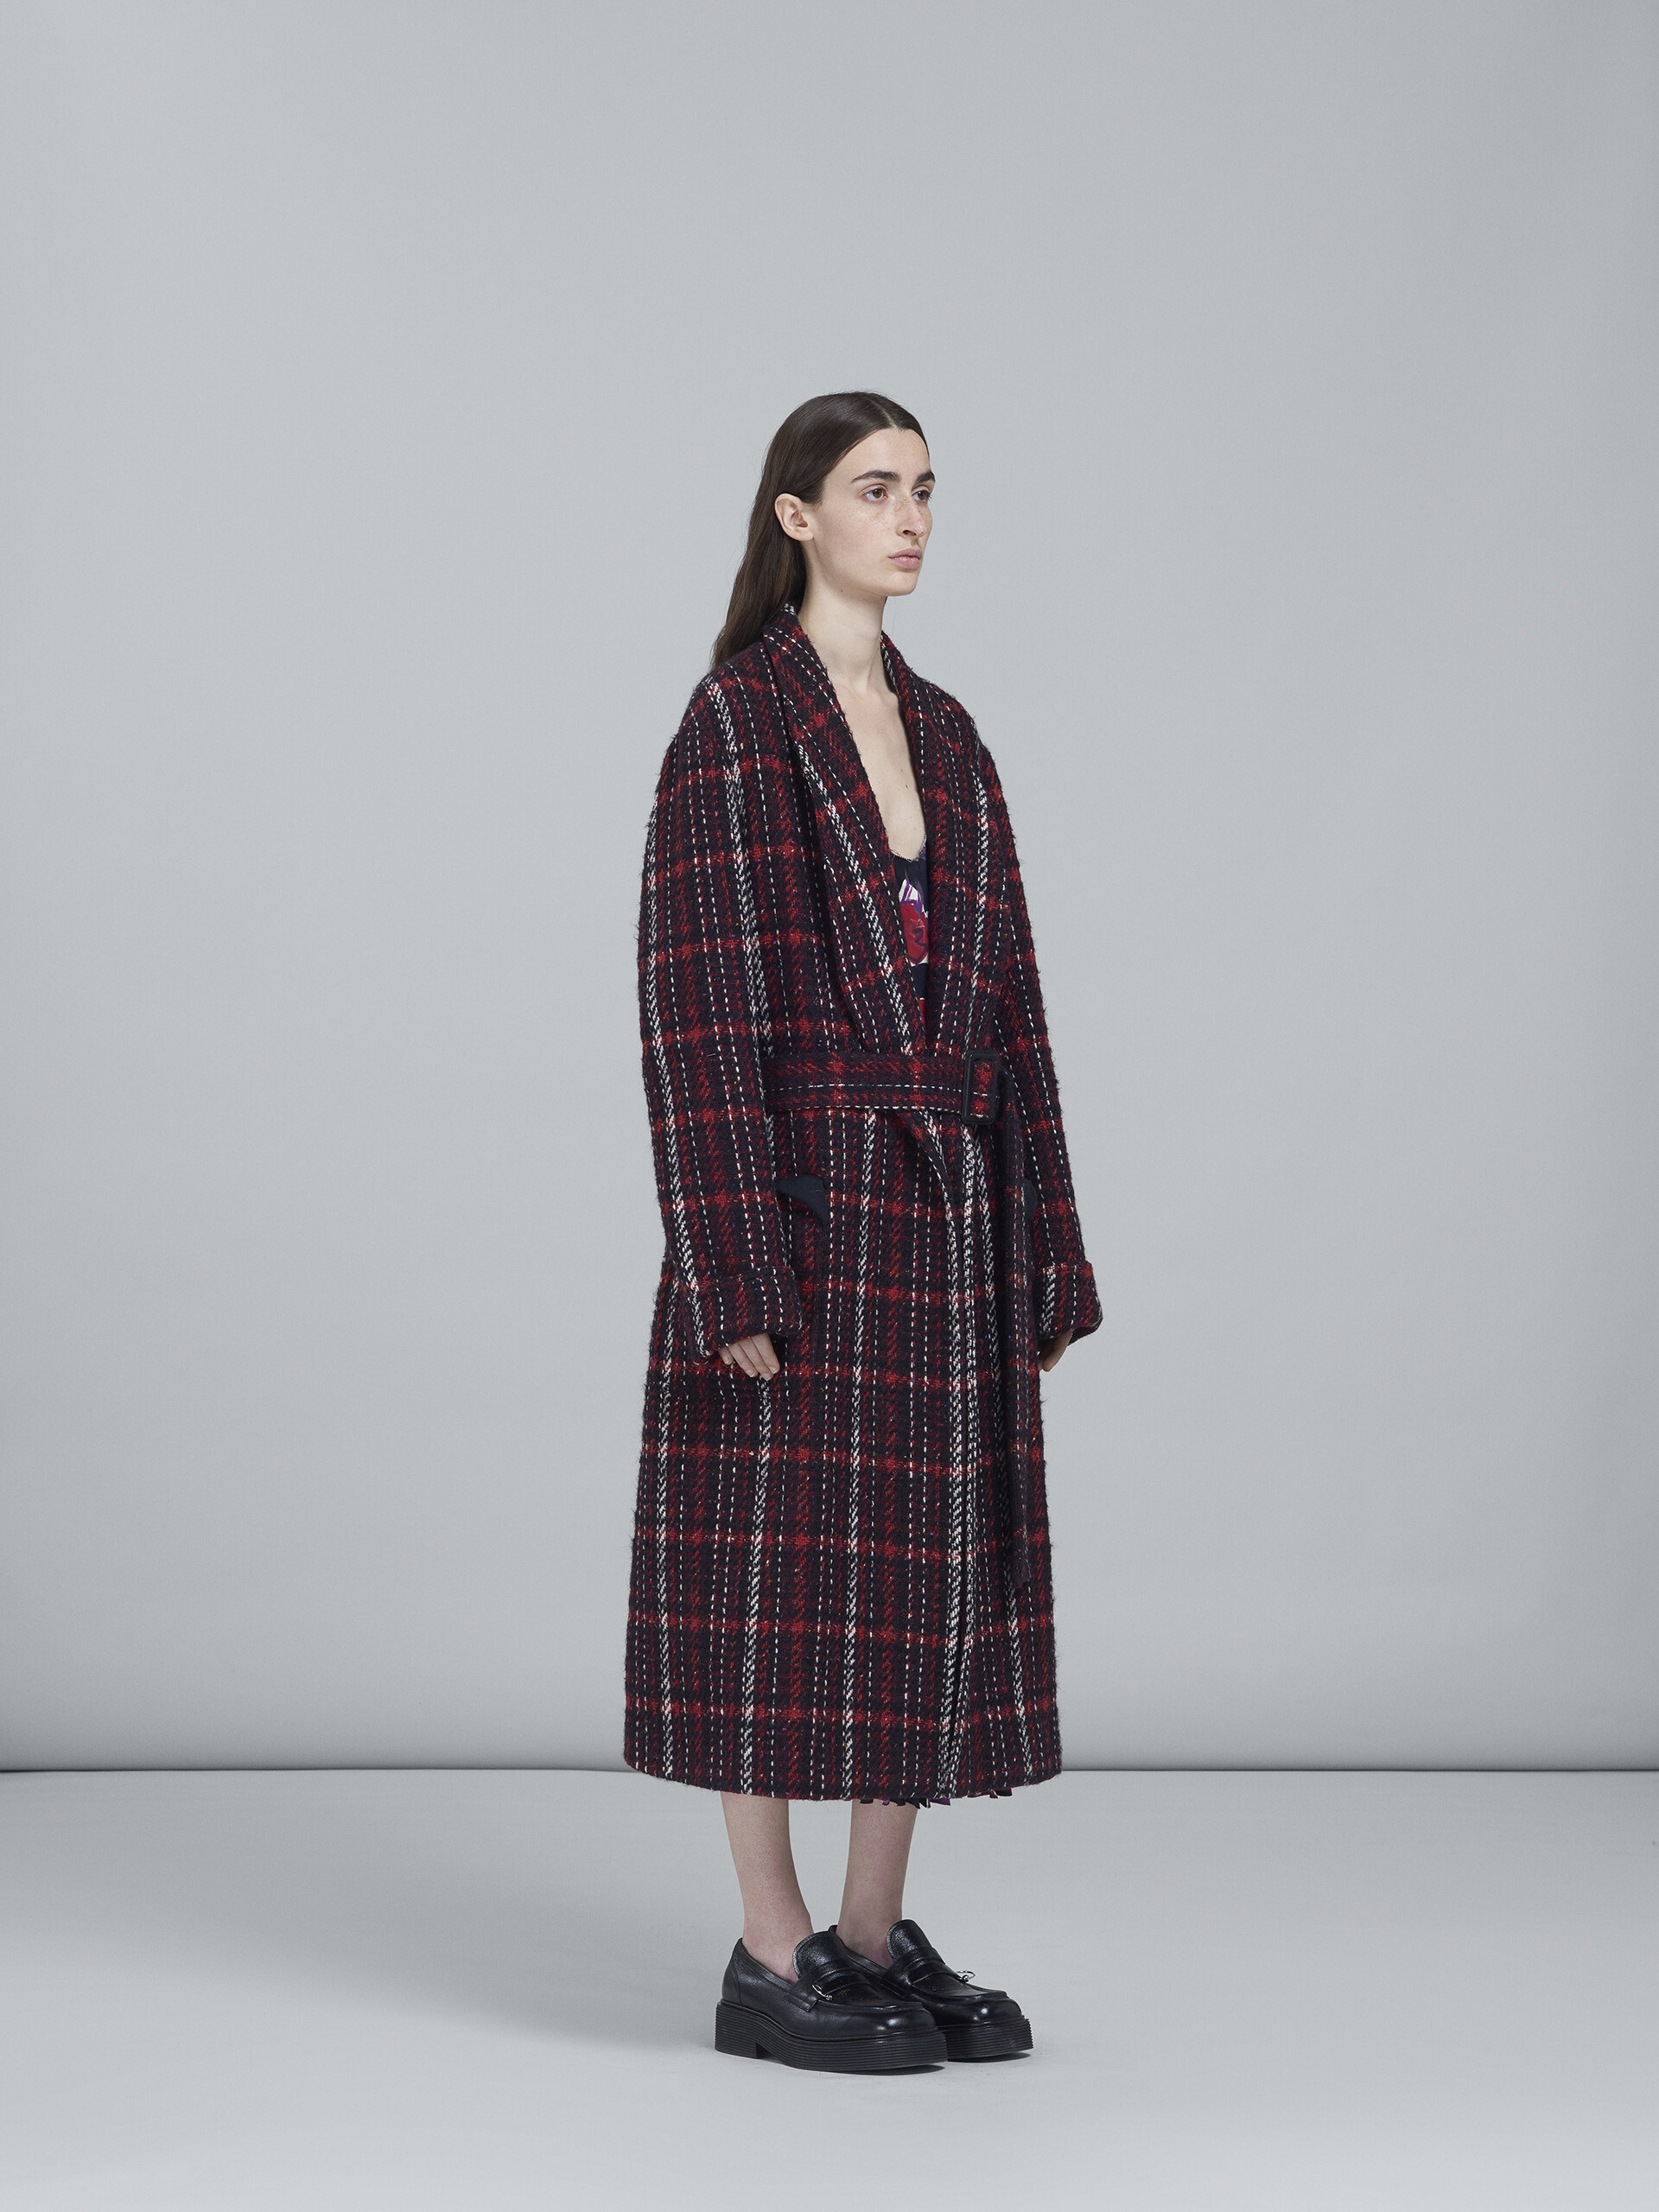 Speckled tweed coat - Coat - Image 6